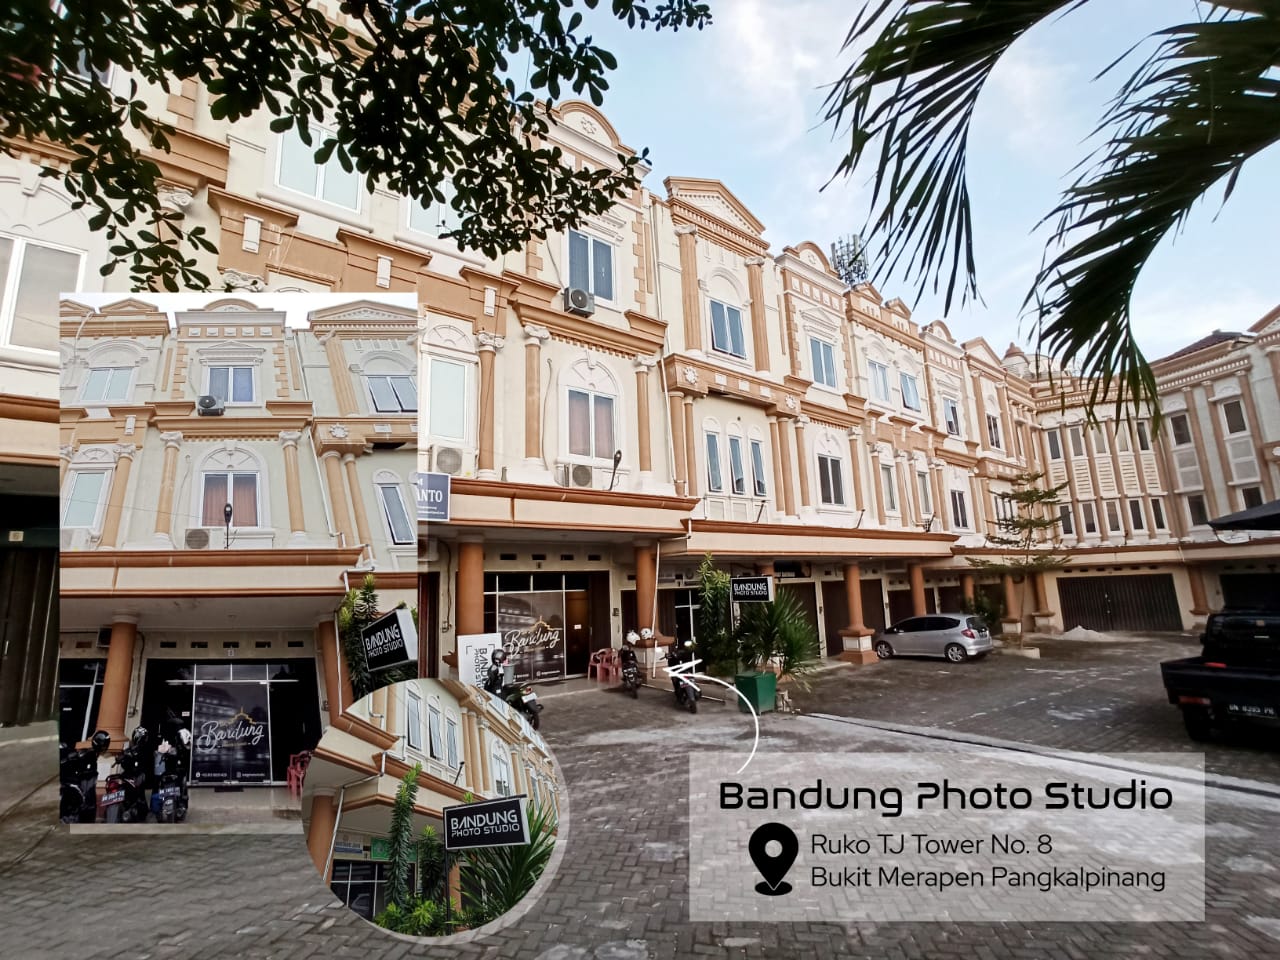 Bandung Photo Studio (bps) Photo